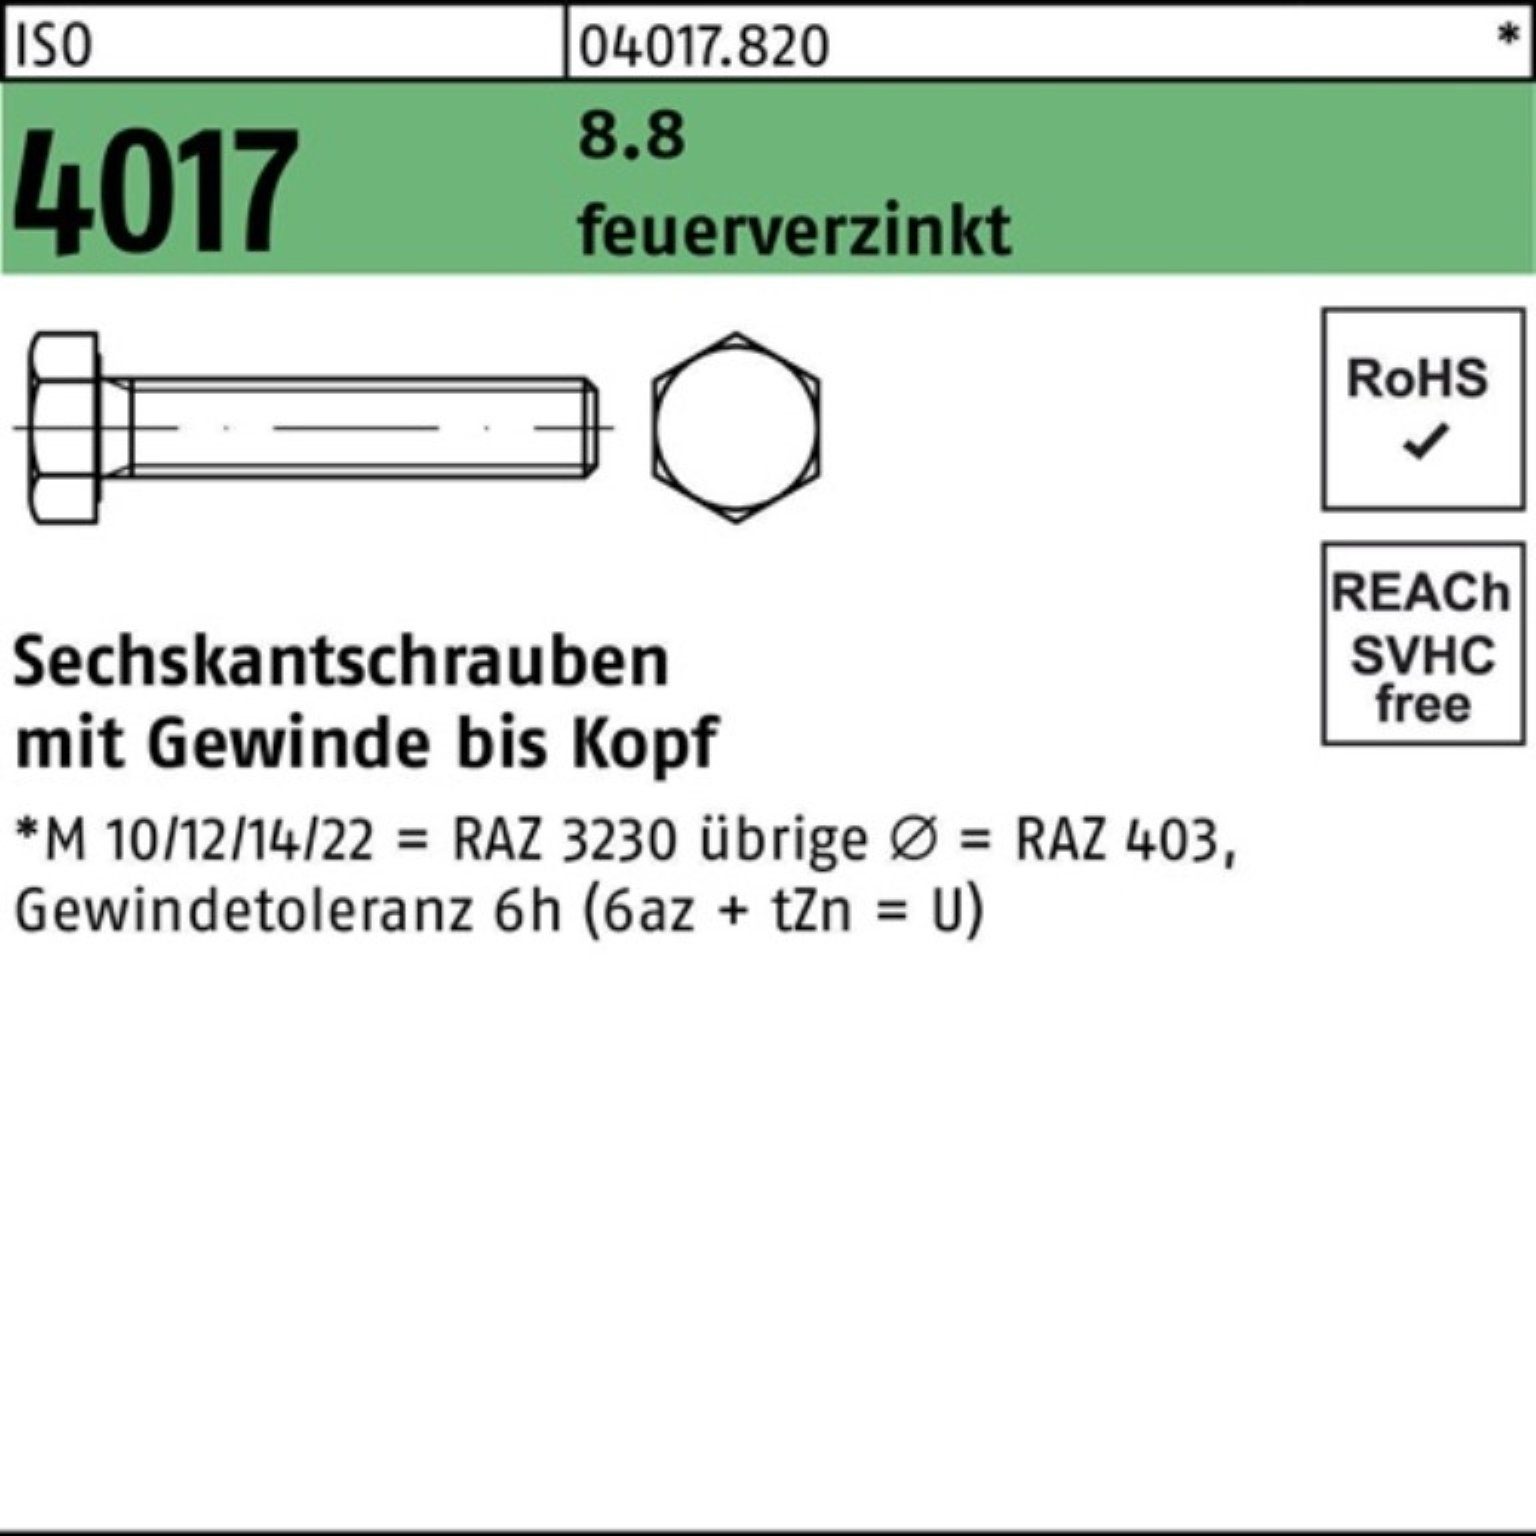 Bufab Sechskantschraube 100er Pack 35 St 100 Sechskantschraube ISO feuerverz. 4017 VG M12x 8.8